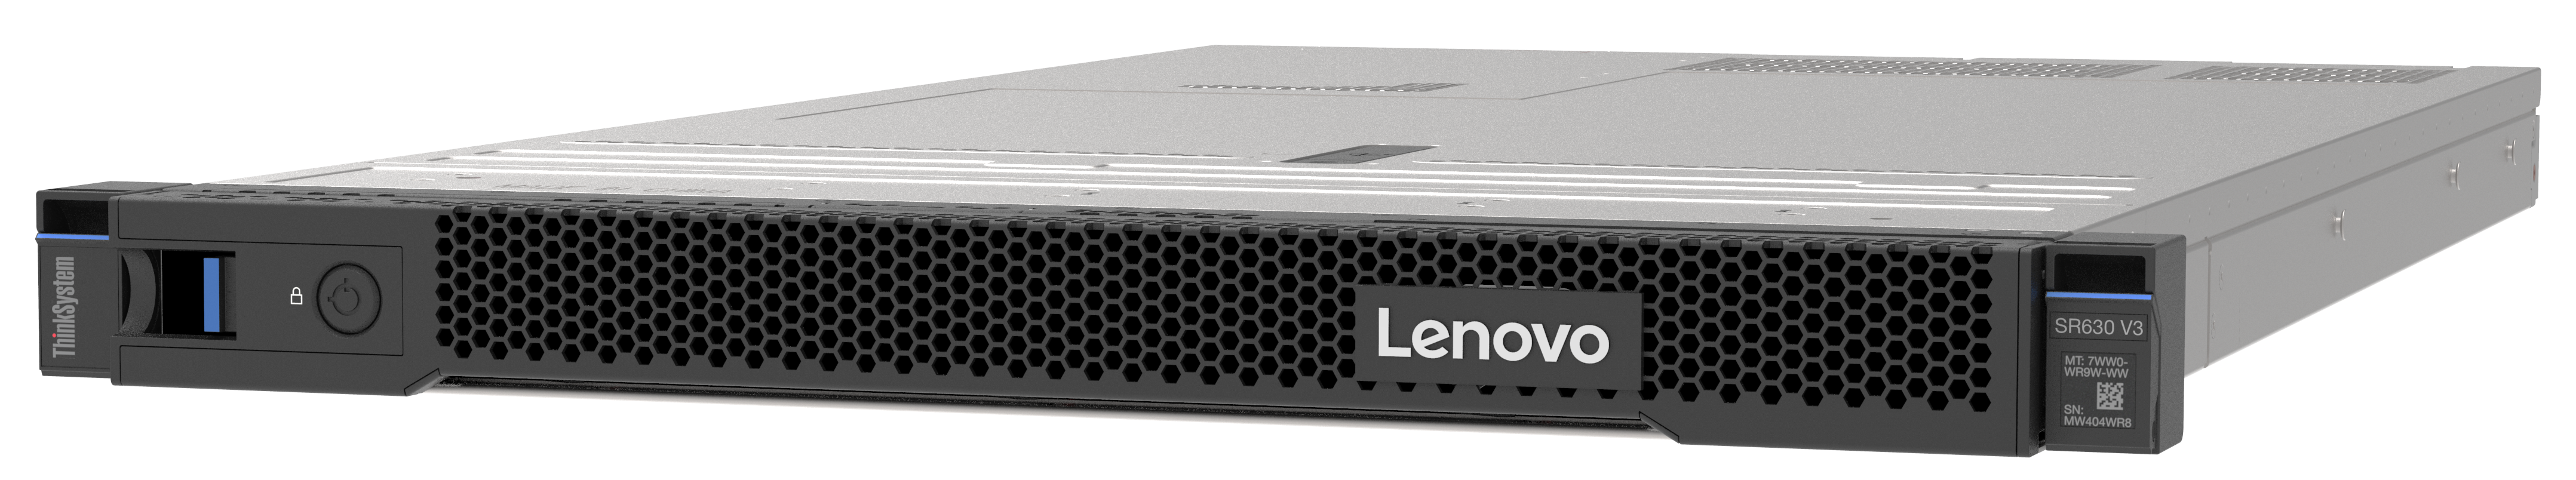 Lenovo ThinkSystem SR630 V3 Image